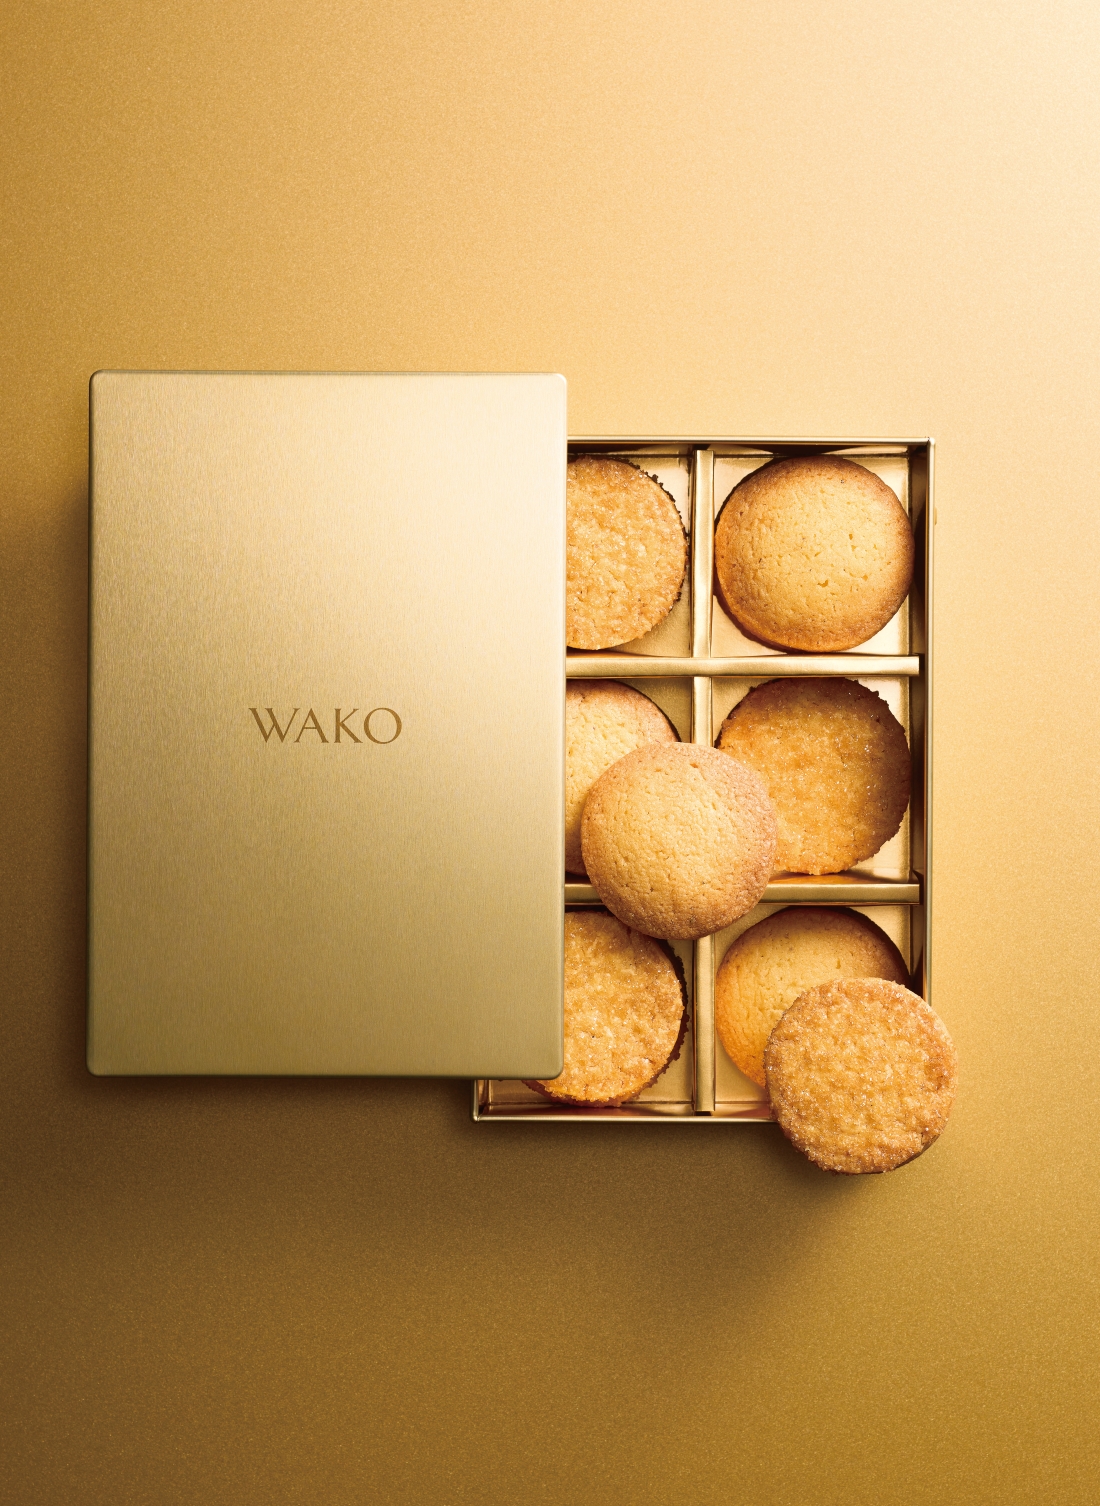 「WAKO クッキー」 